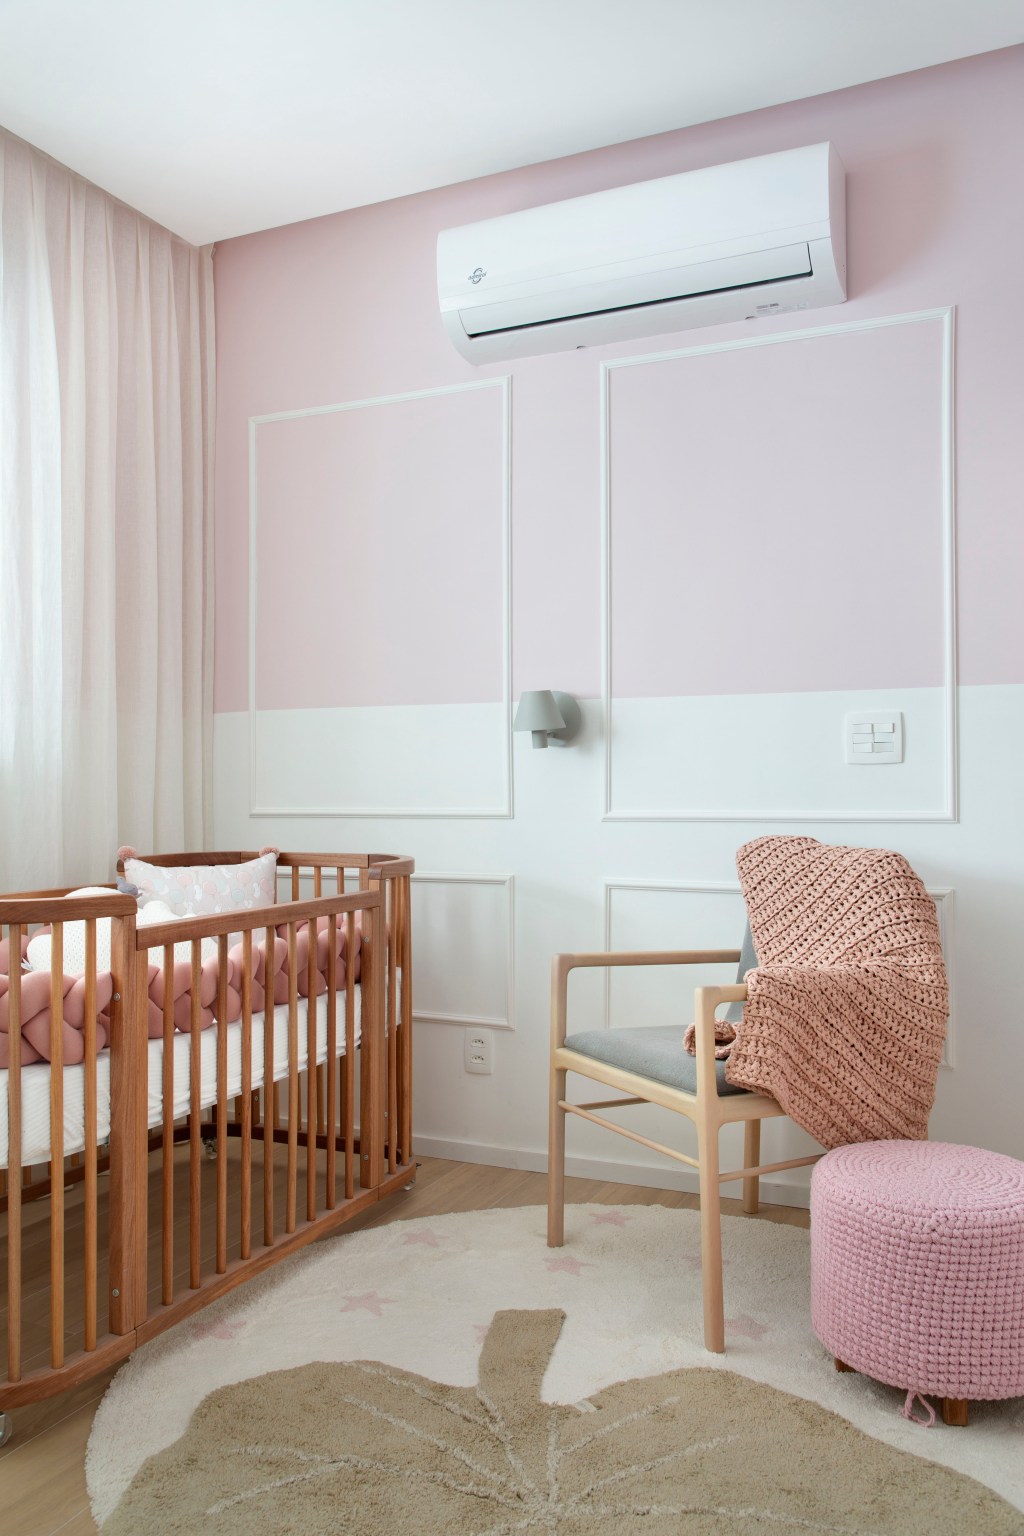 apartamento decoracao up3 arquitetura rio de janeiro japandi escandinavo japao quarto bebe